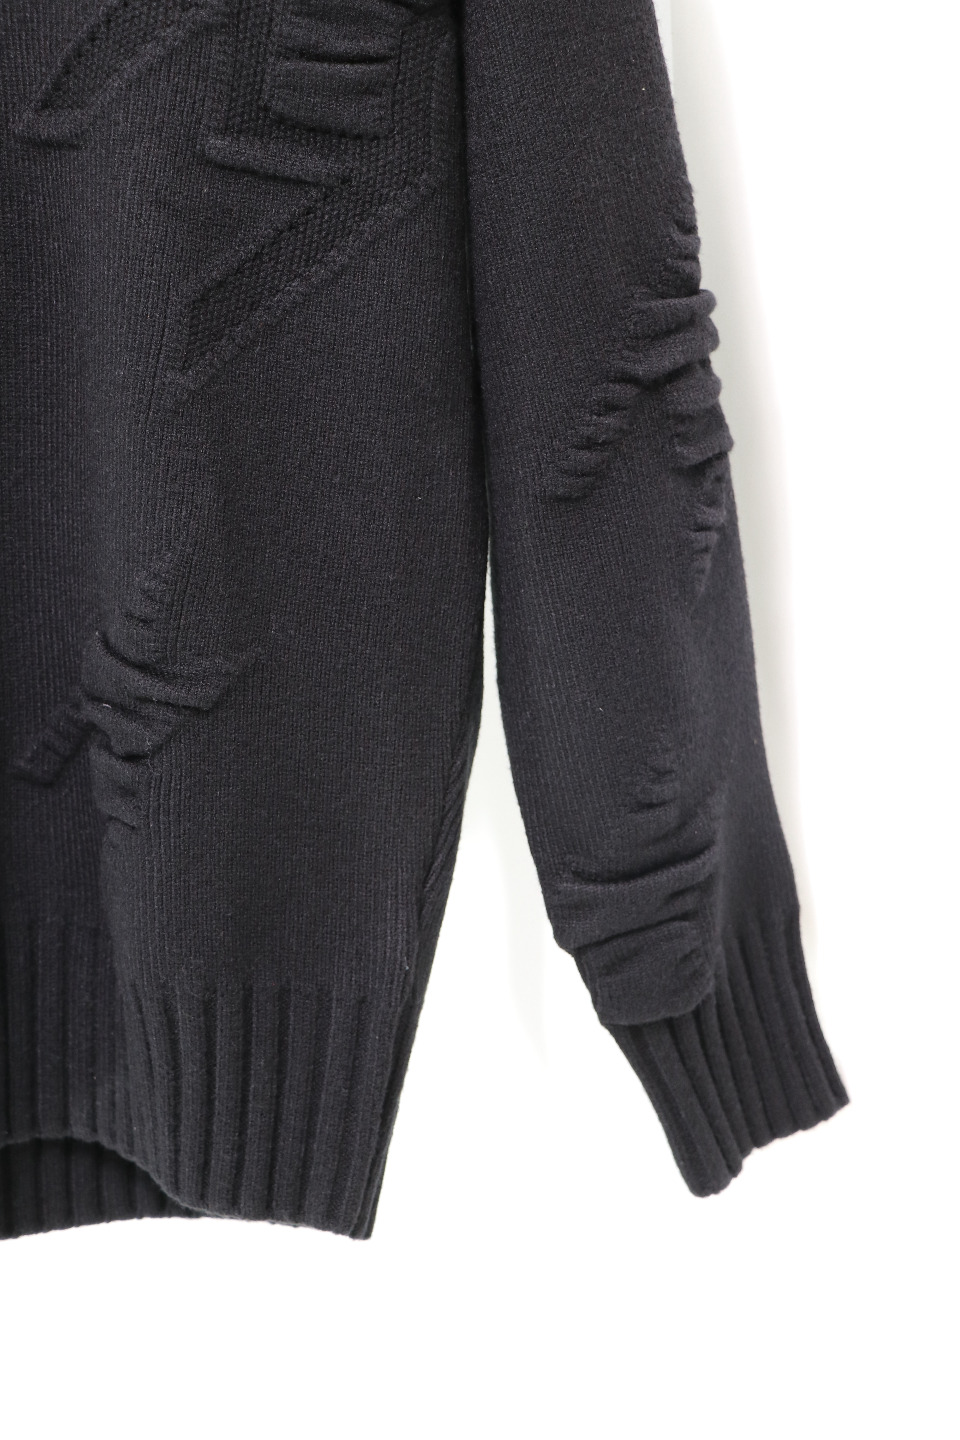 肌寒い季節に欠かせない ジバンシィ ニット偽物 柔らかい 暖かい トップス セーター メンズ シンプル 2色可選_8